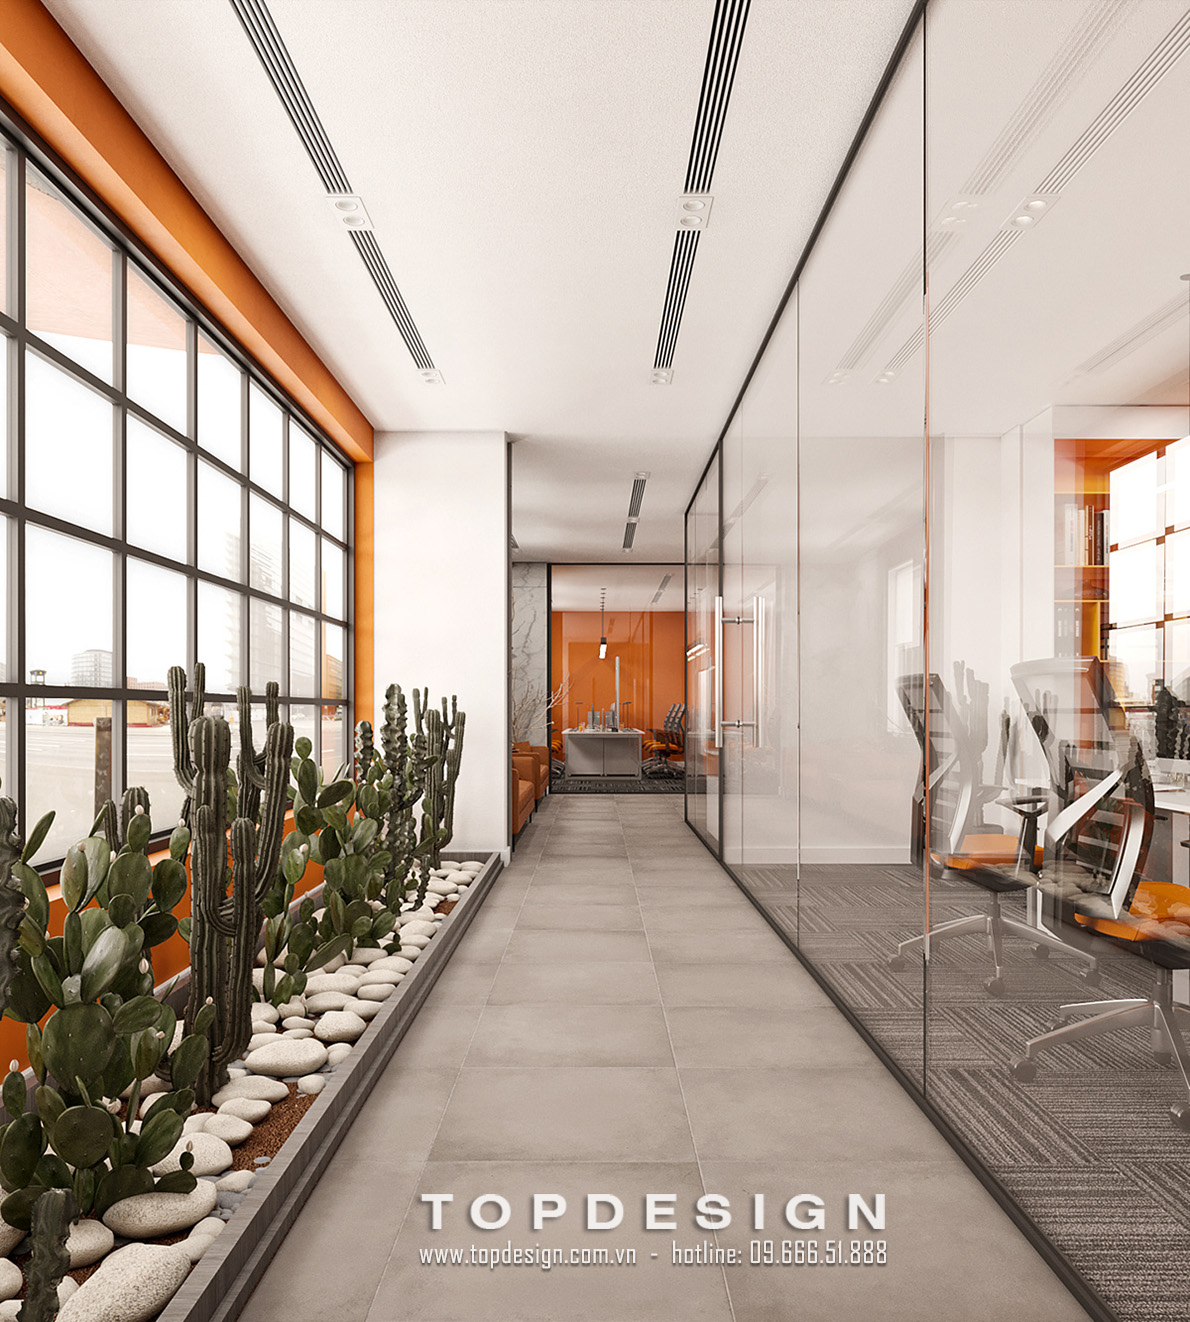 6..Thiết kế nội thất văn phòng công ty Rebune tại khu công nghiệp Quang minh đẹp, độc, lạ_TOPDESIGN